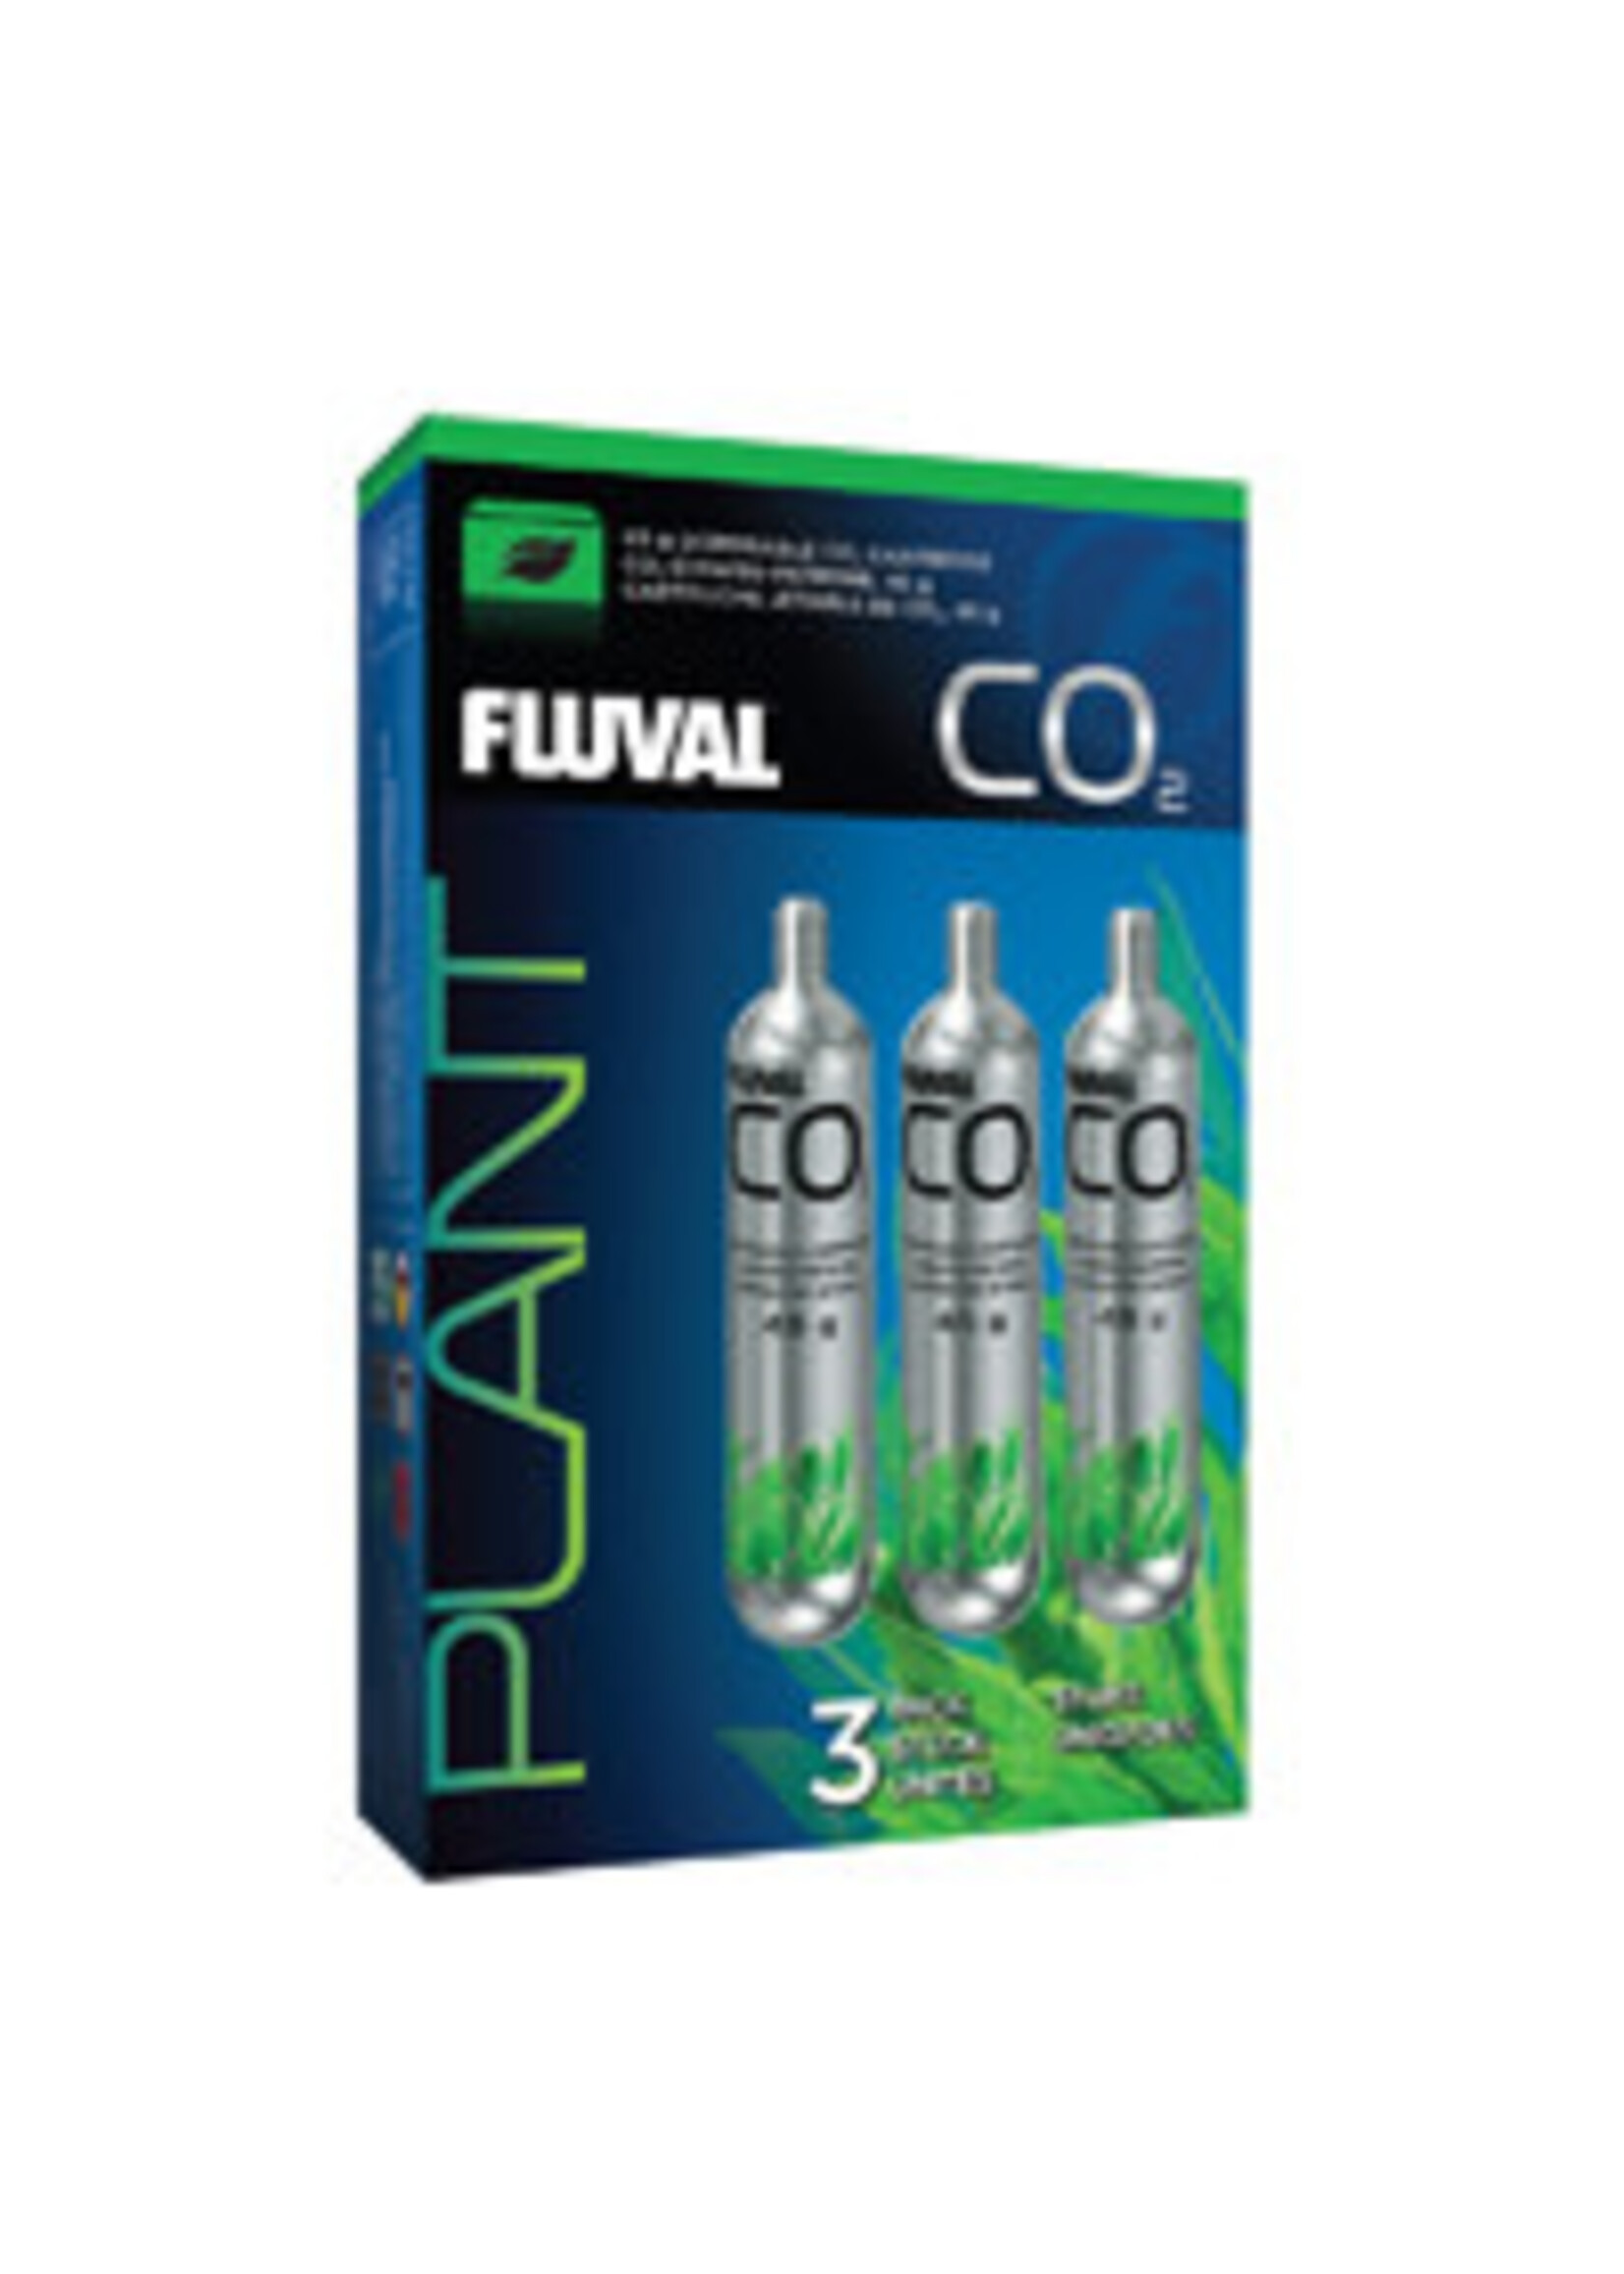 Fluval 45 G CO2 CART 3 PK